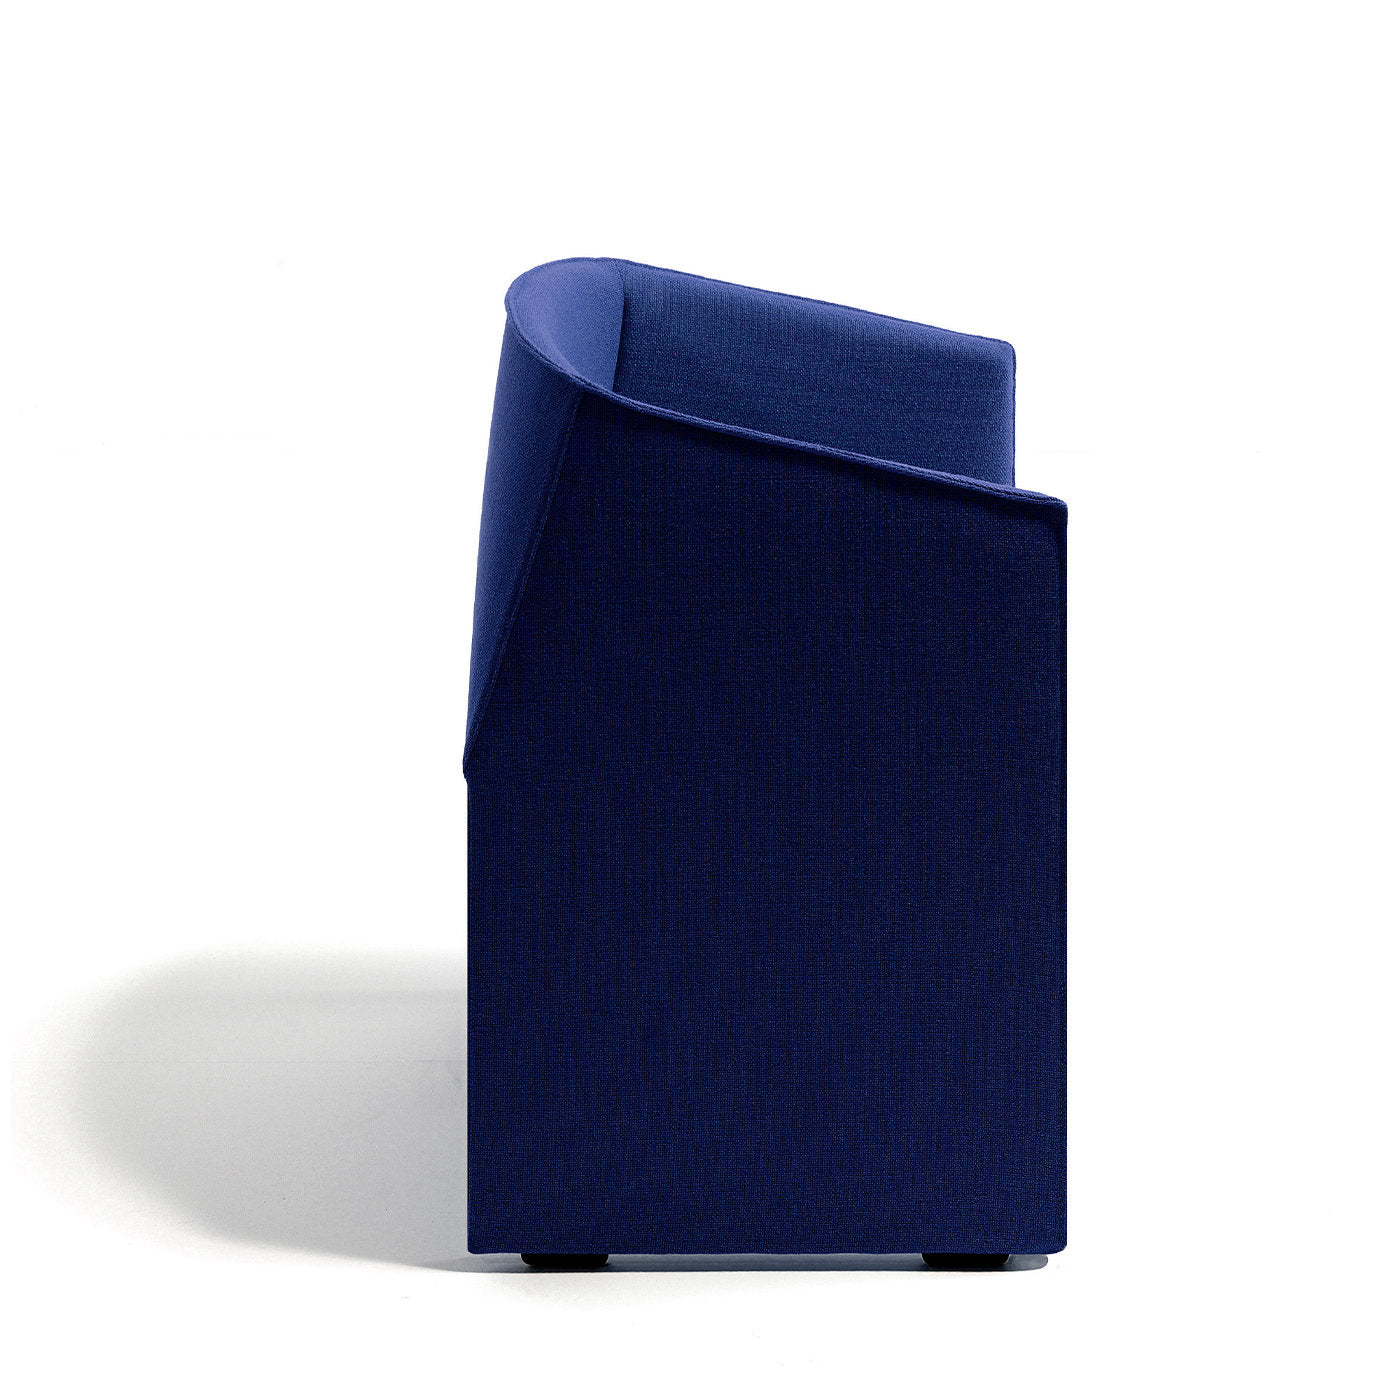 Plau Blue Tall on feet chair by Gabriele and Oscar Buratti - Alternative view 1